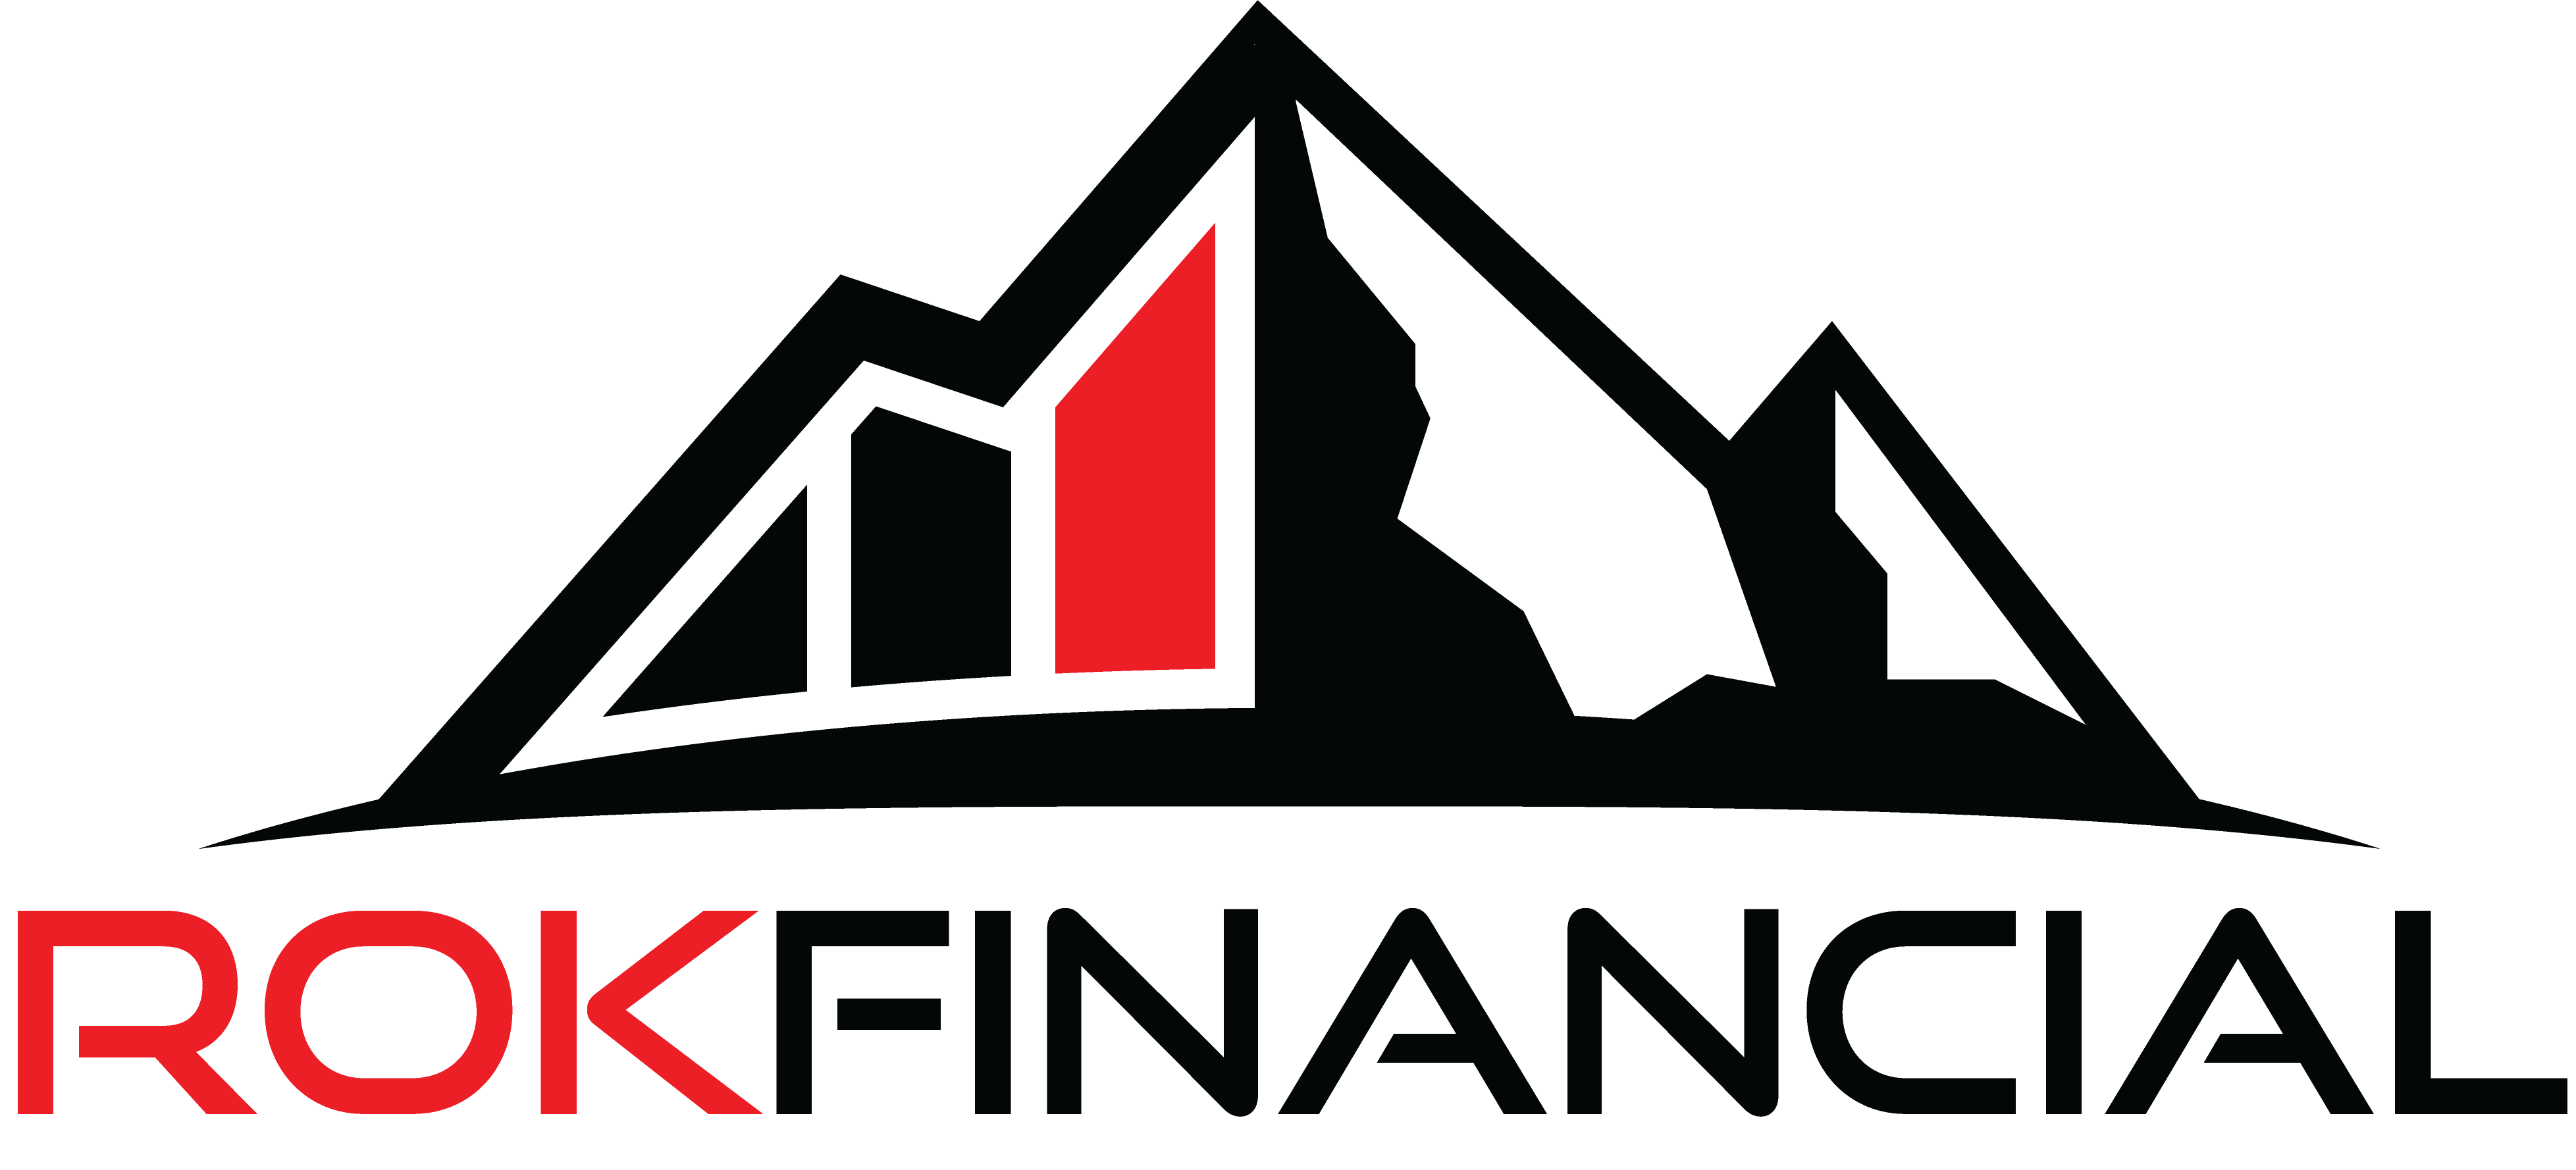 ROK Financial logo